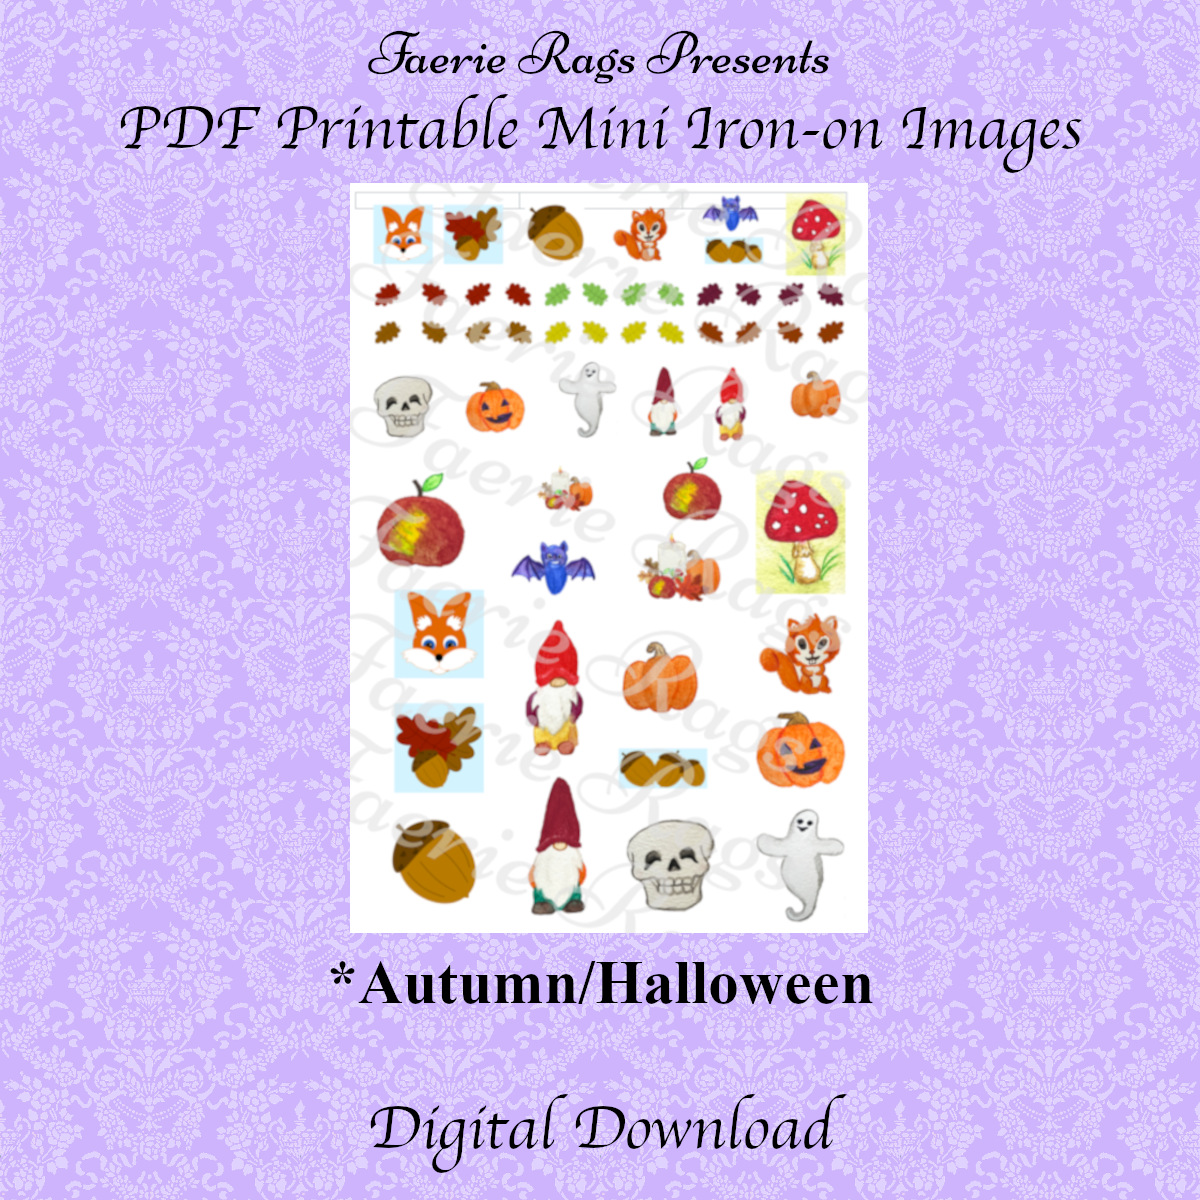 Autumn/Halloween Miniature Iron-on Images